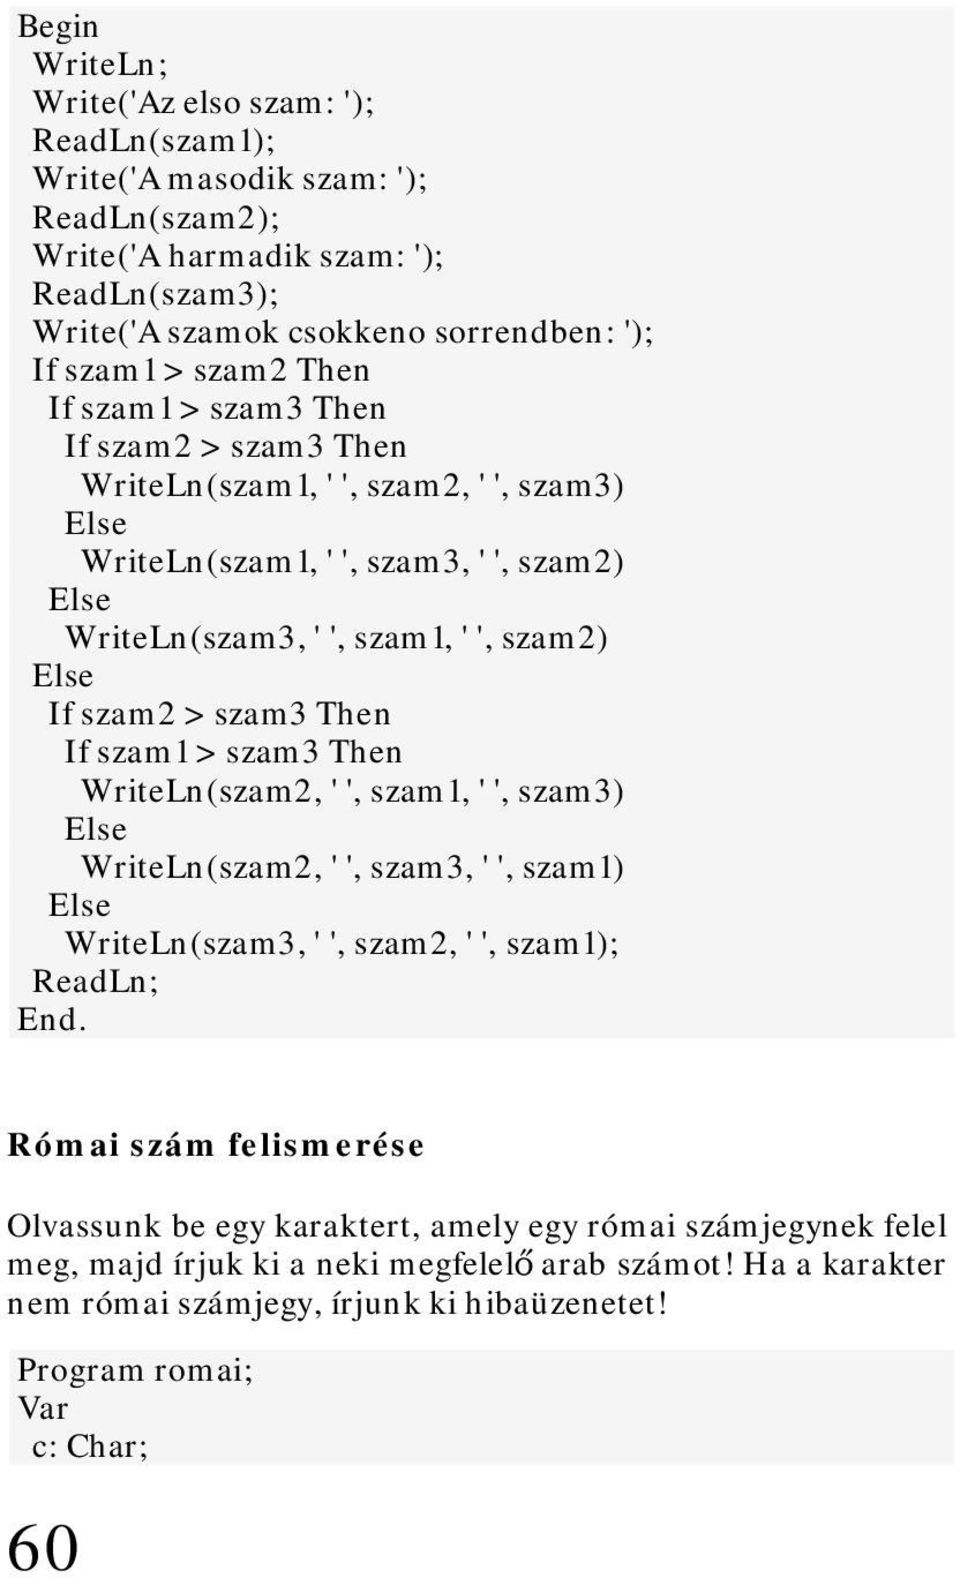 szam3 Then If szam1 > szam3 Then WriteLn(szam2, ' ', szam1, ' ', szam3) WriteLn(szam2, ' ', szam3, ' ', szam1) WriteLn(szam3, ' ', szam2, ' ', szam1); ReadLn; End.